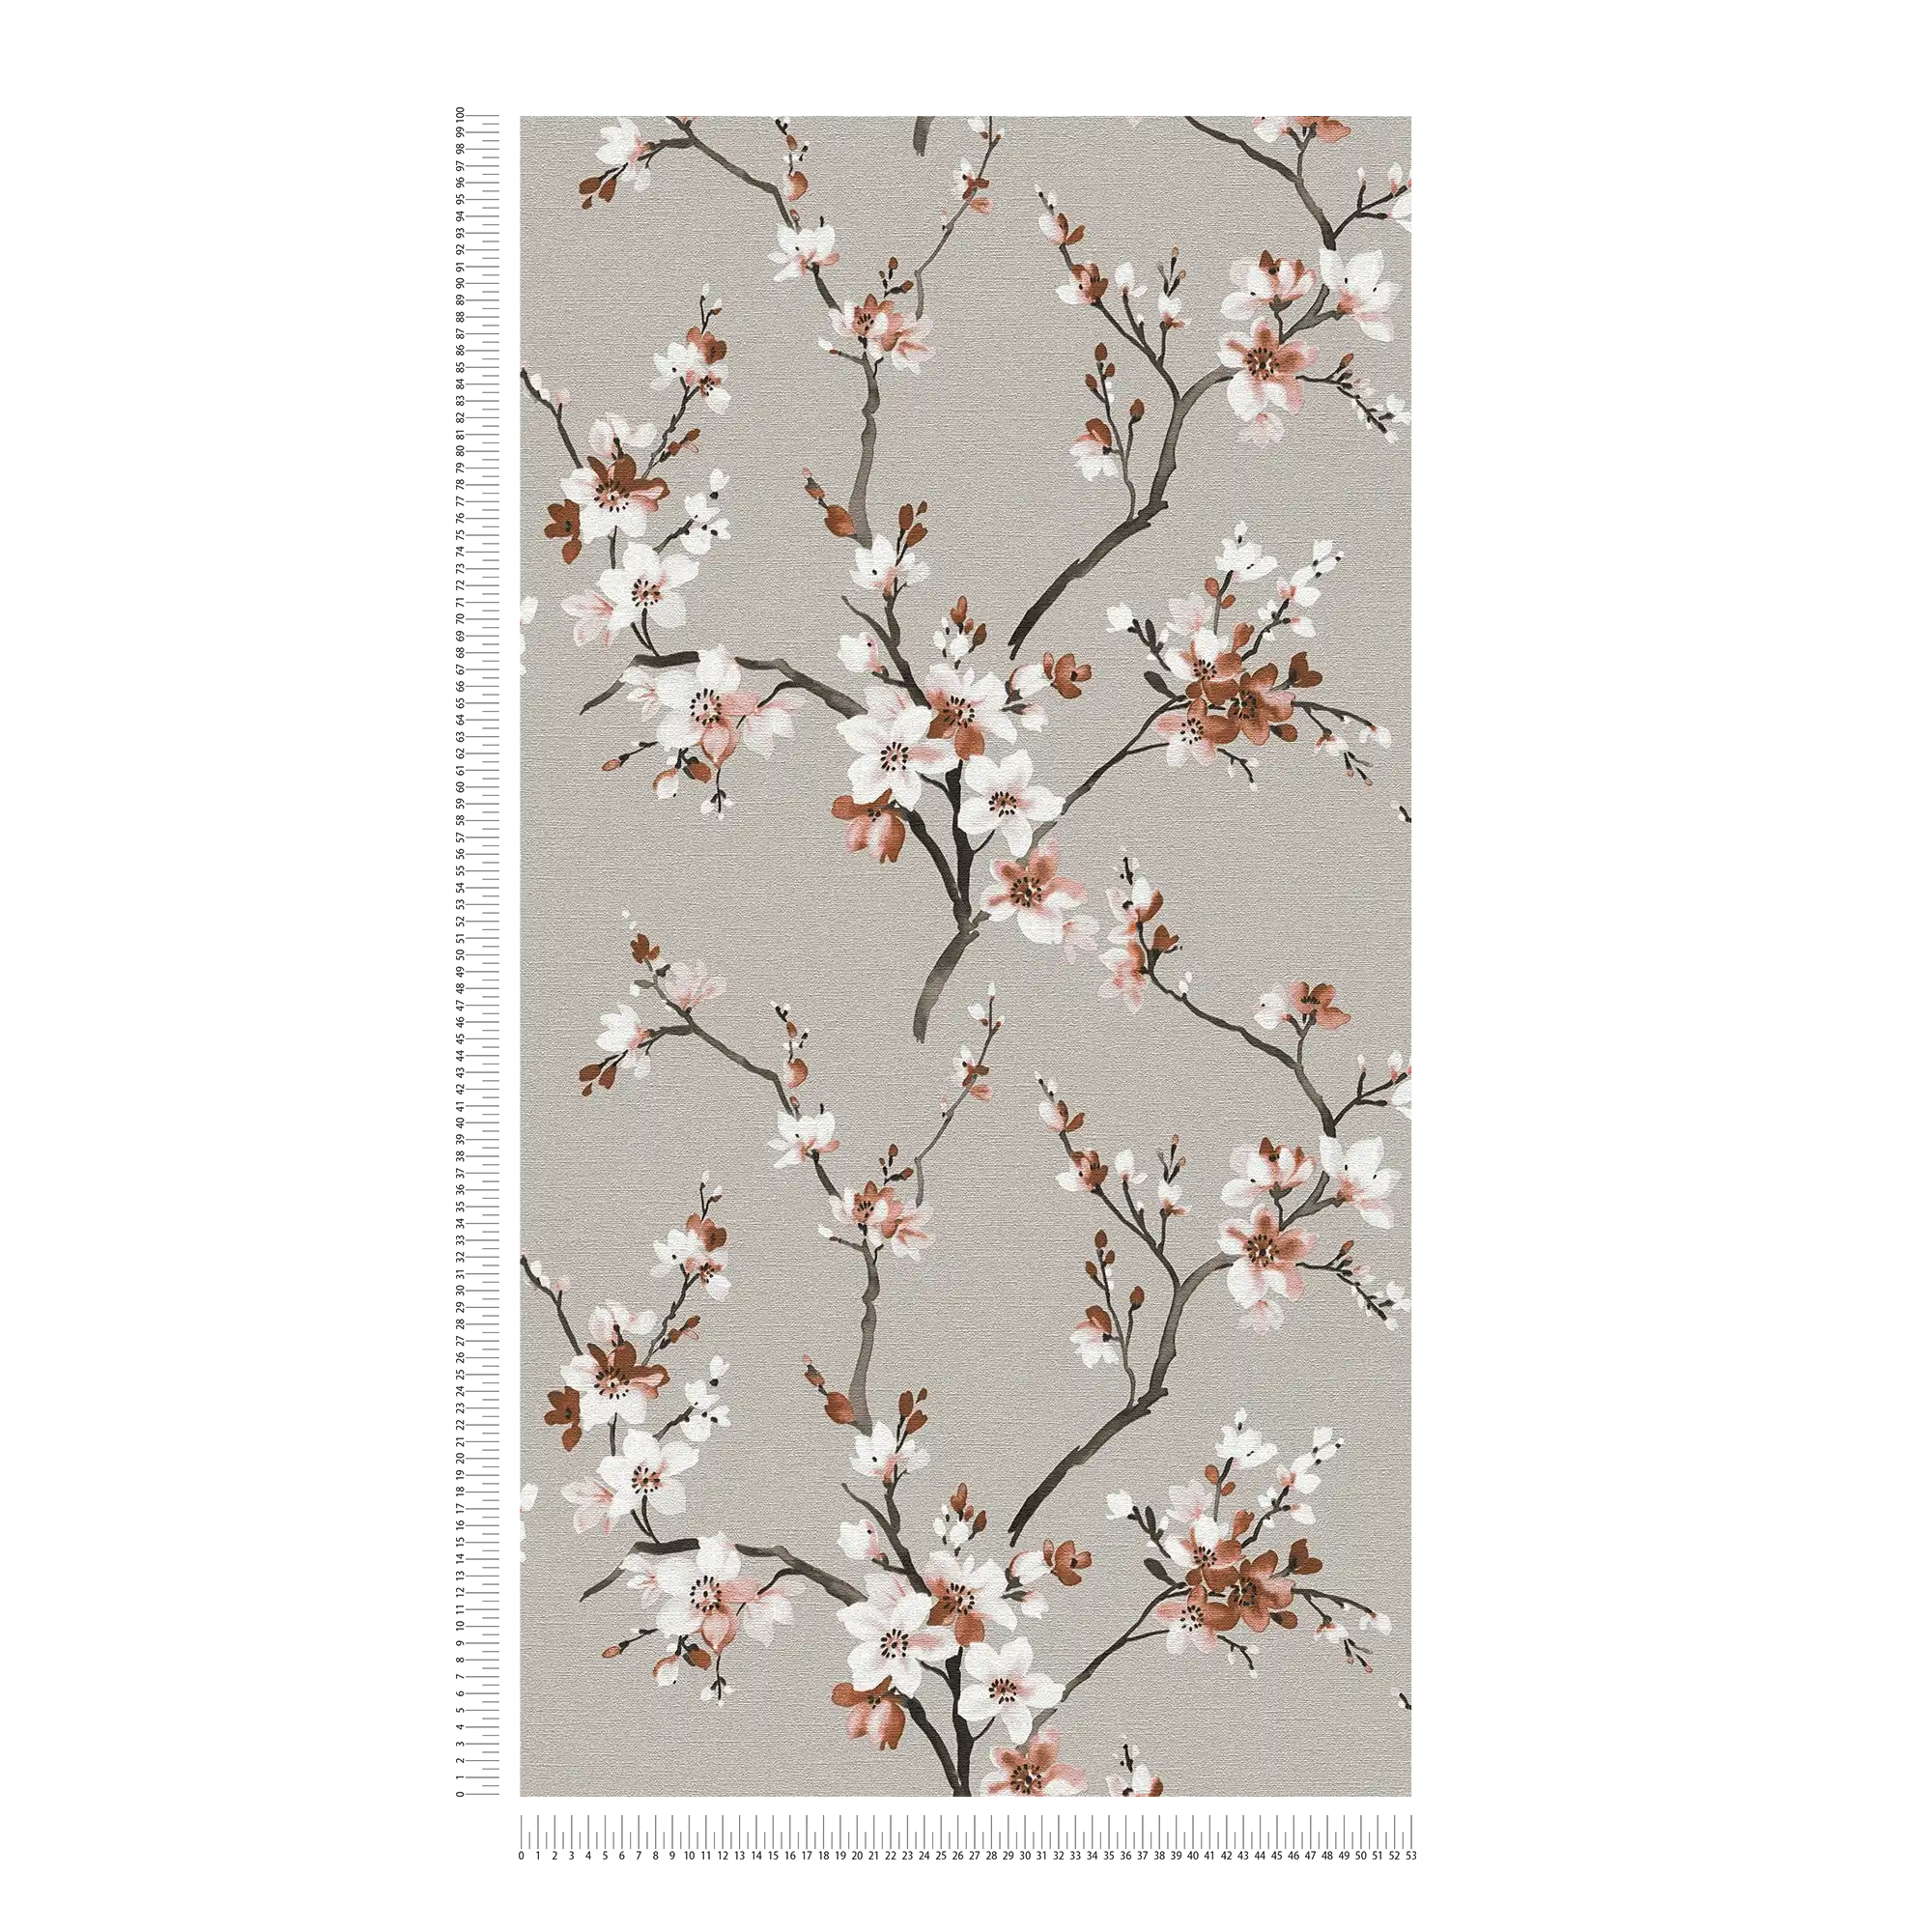             Blumentapete Grau mit braunen Aquarell Blüten
        